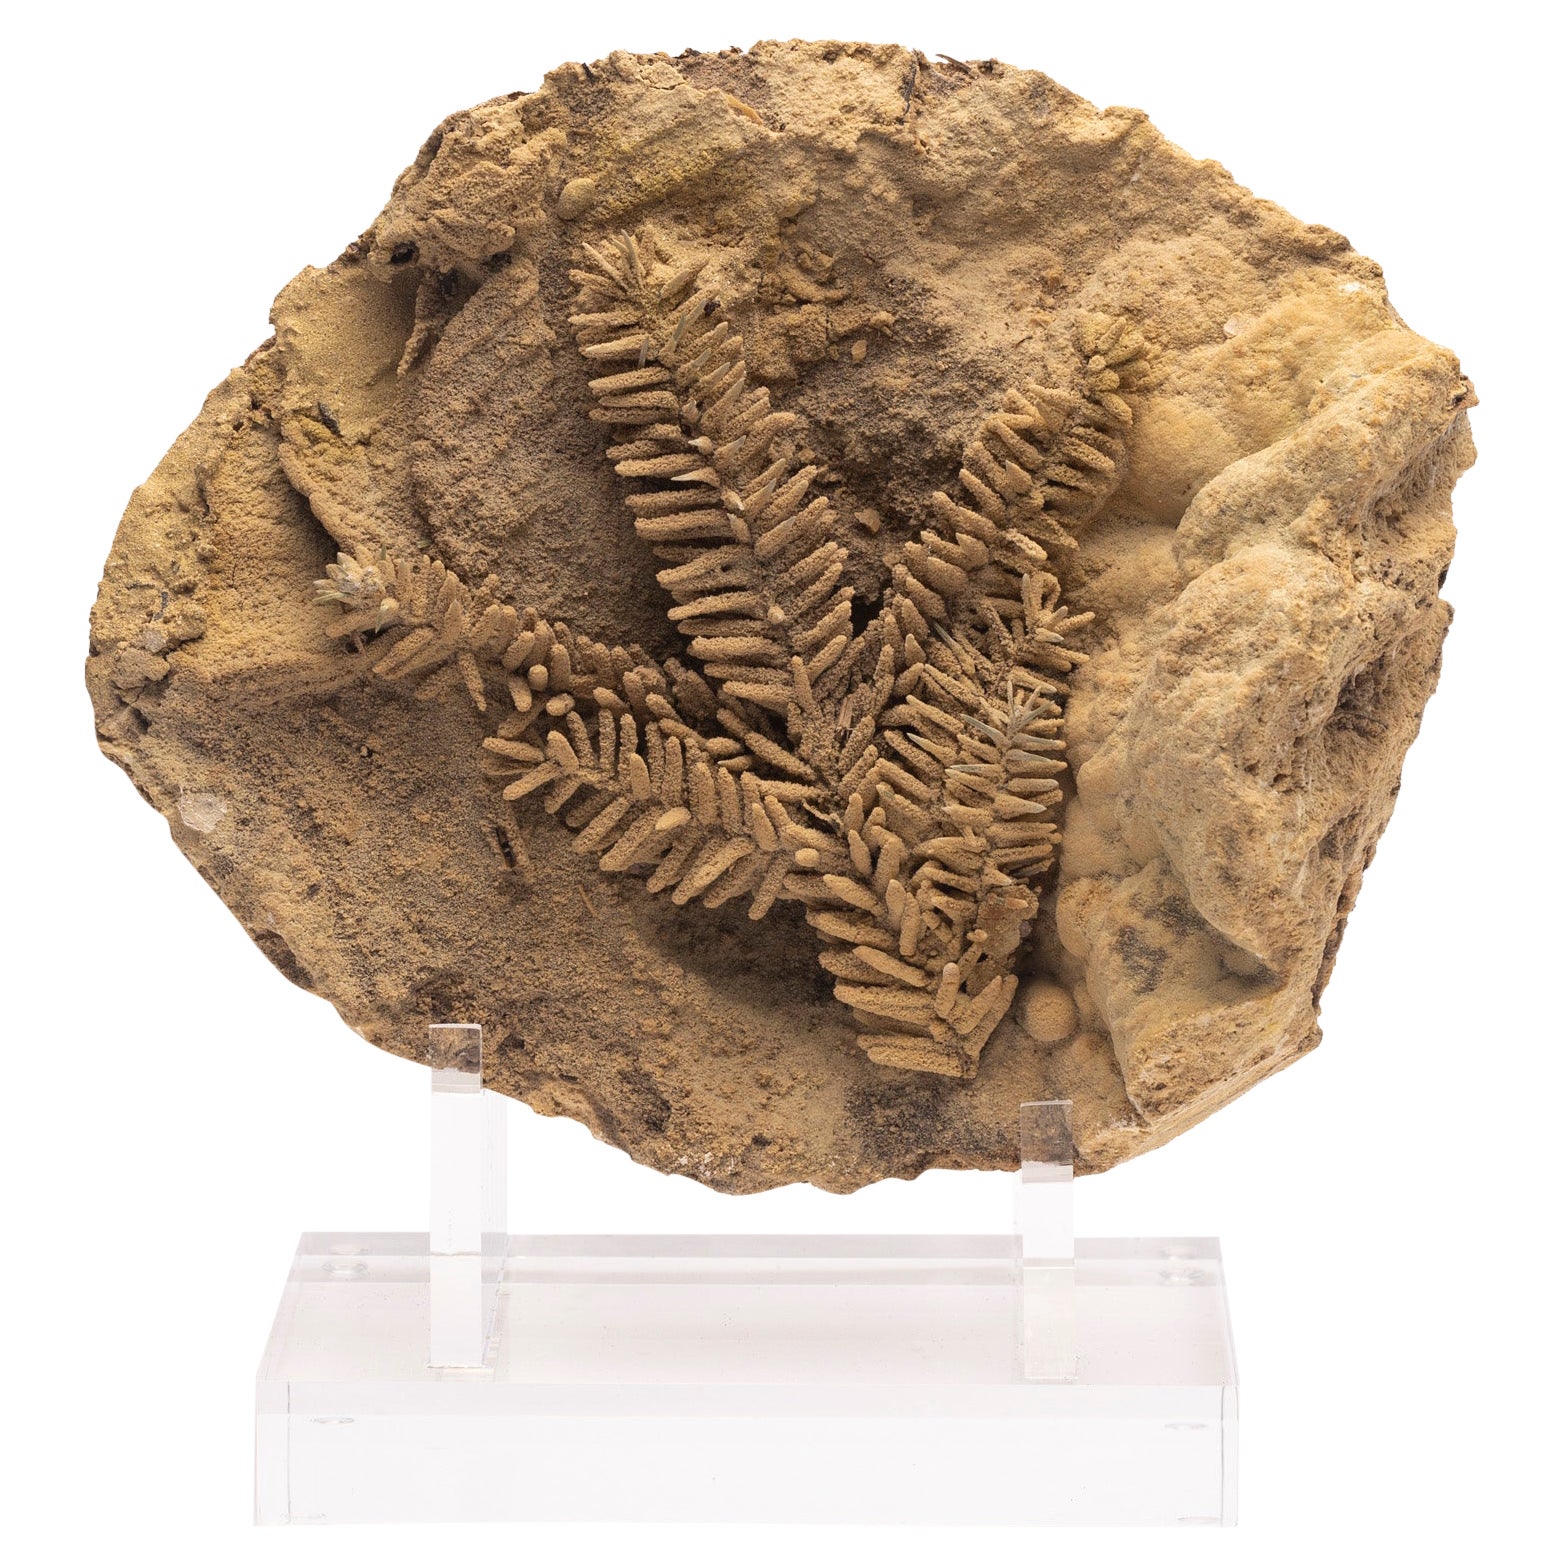 Fossilblatt aus Travertin aus Tirol, Österreich, Pleistocene-Periode